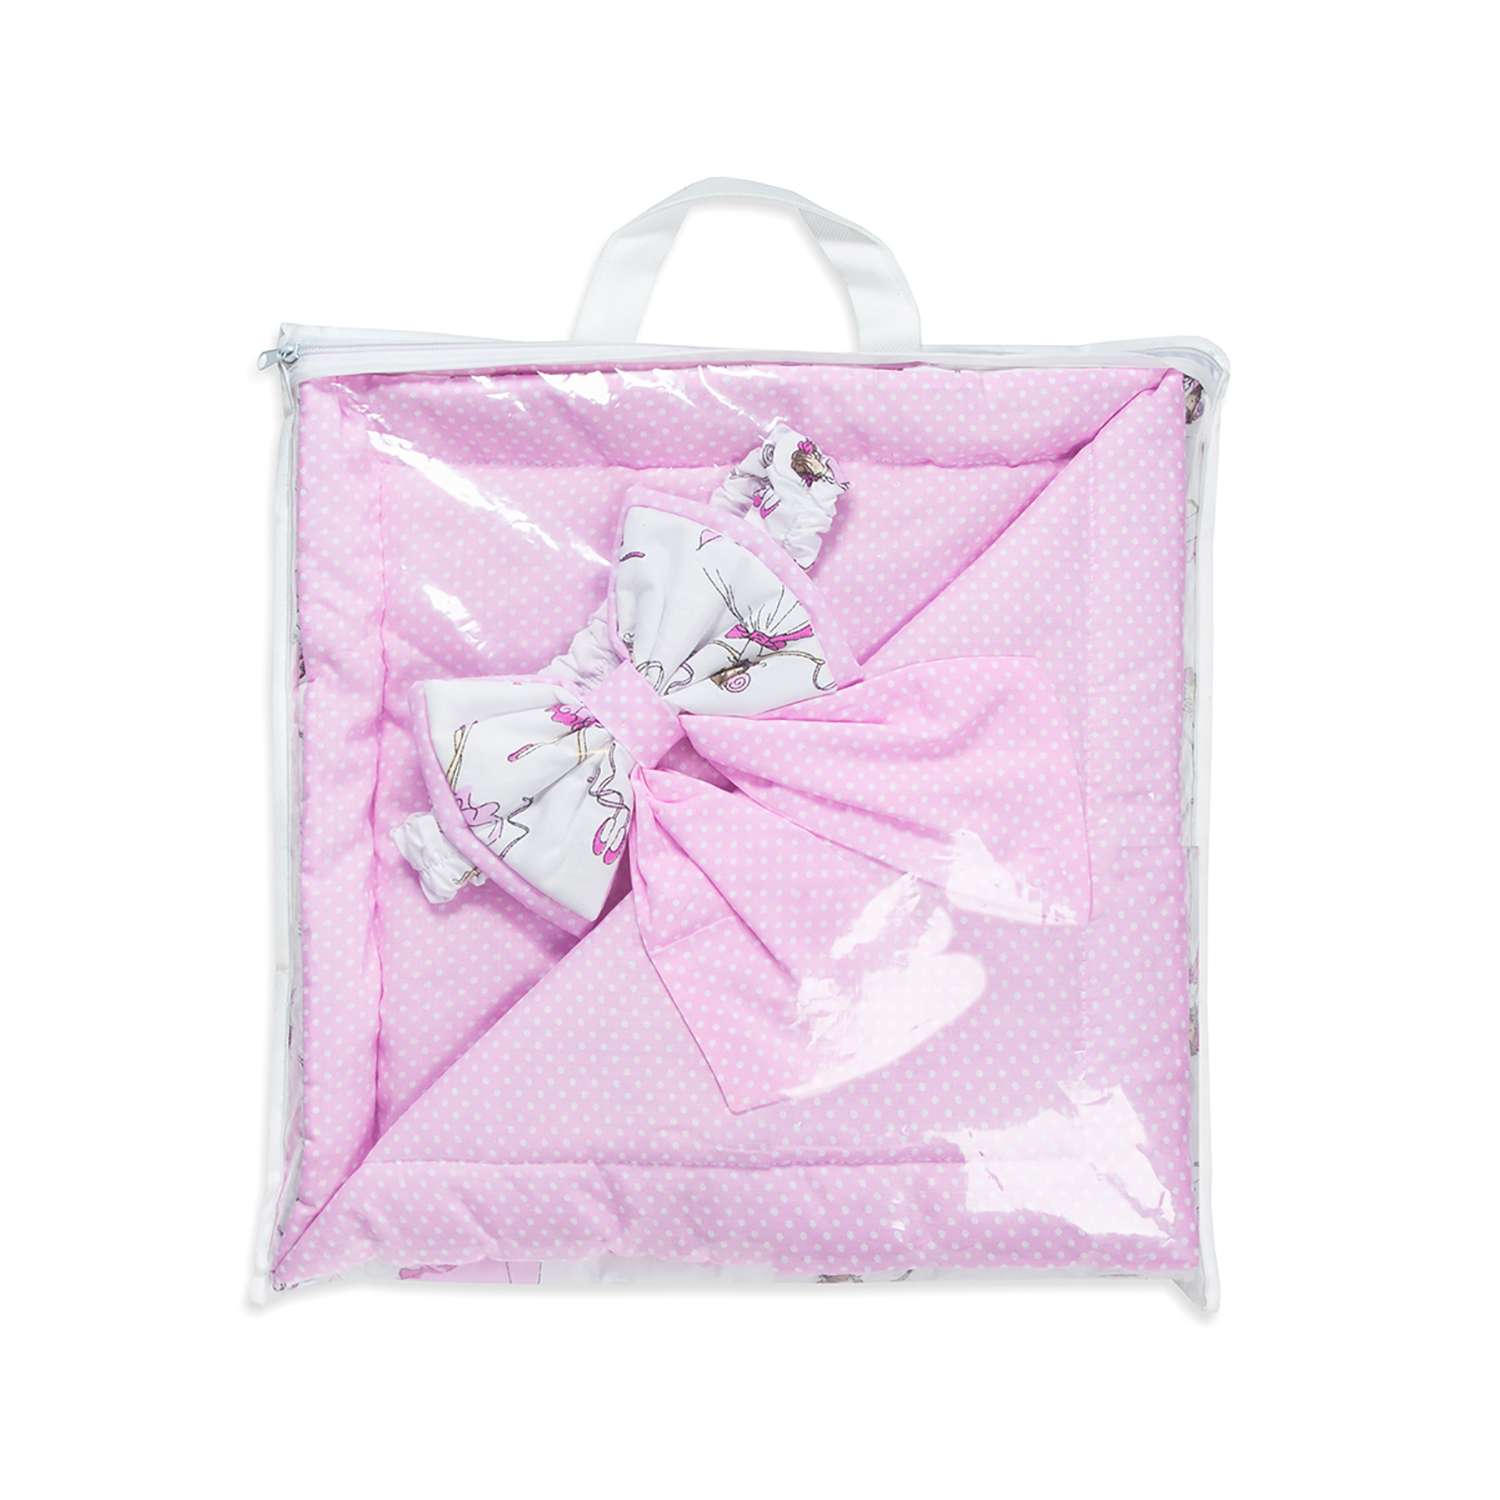 Конверт-одеяло Чудо-чадо для новорожденного на выписку Времена года балерины/розовый - фото 5